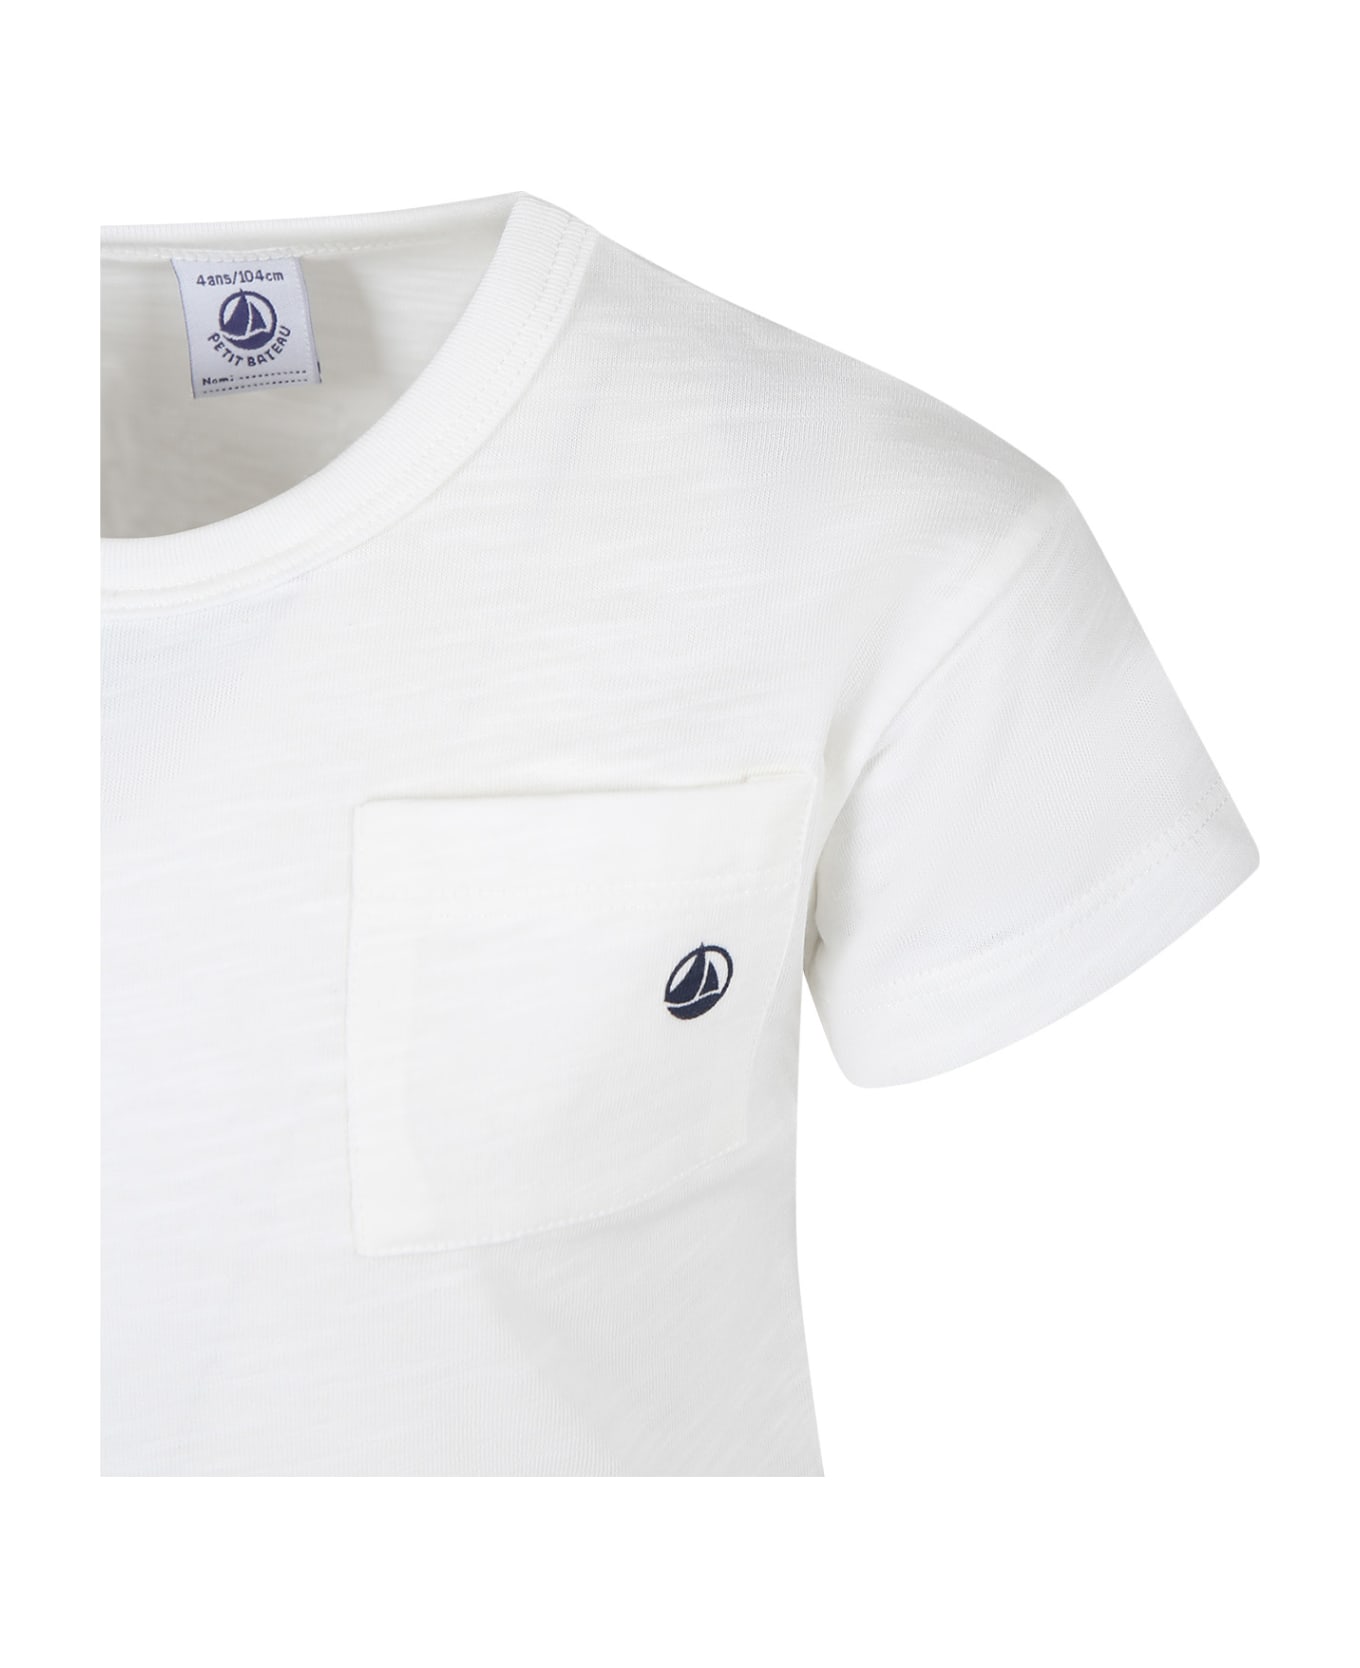 Petit Bateau White T-shirt For Kids - White